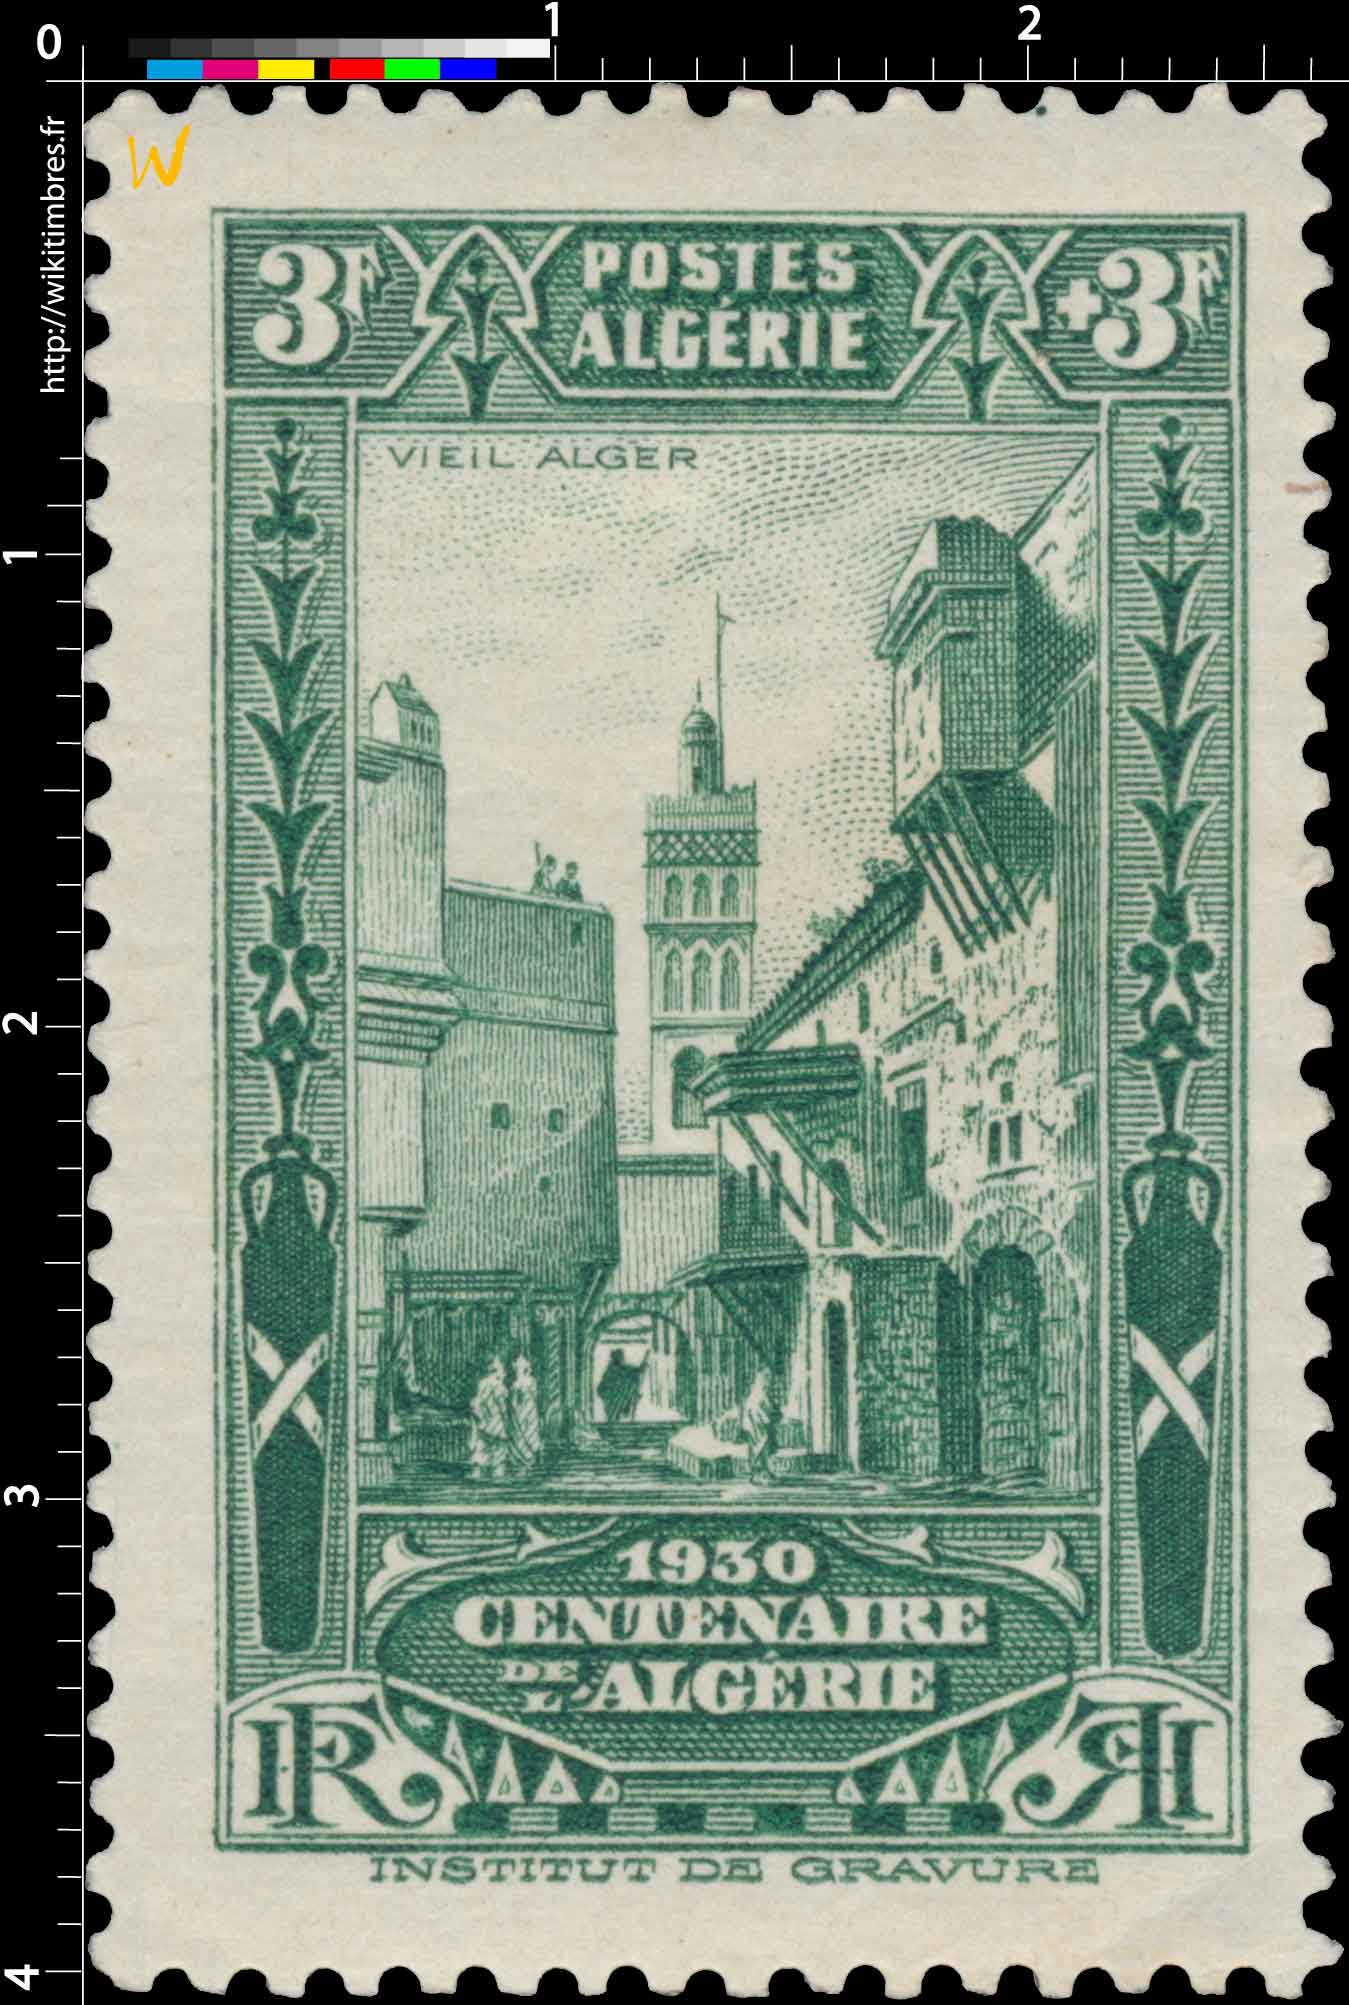 Algérie - Vieil Alger - Centenaire de l'Algérie 1930